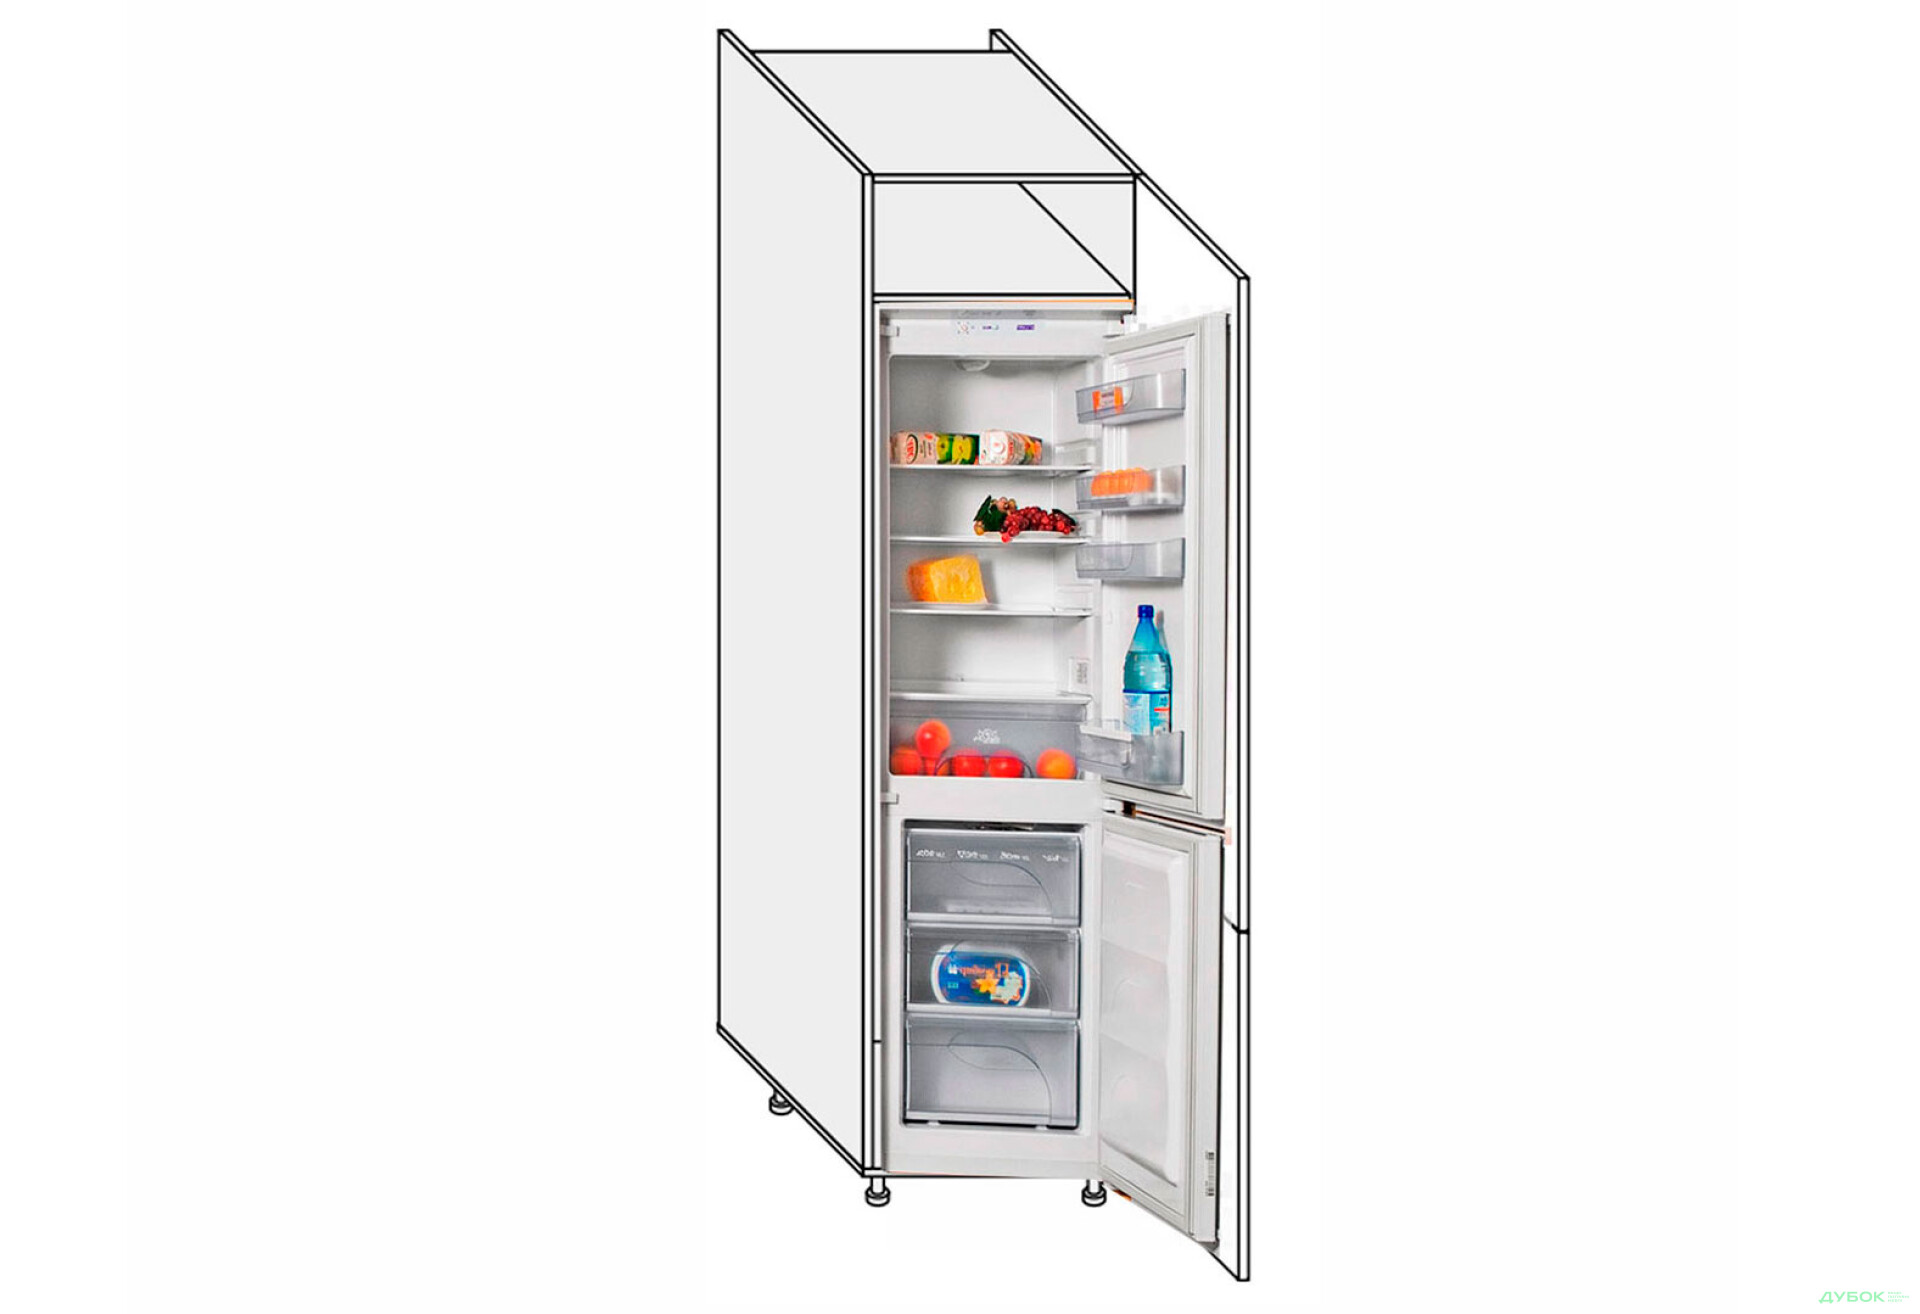 Фото 1 - Пенал 60ПХ/2140 холодильник Pro Blum правый Миллениум / Millenium Premium МироМарк